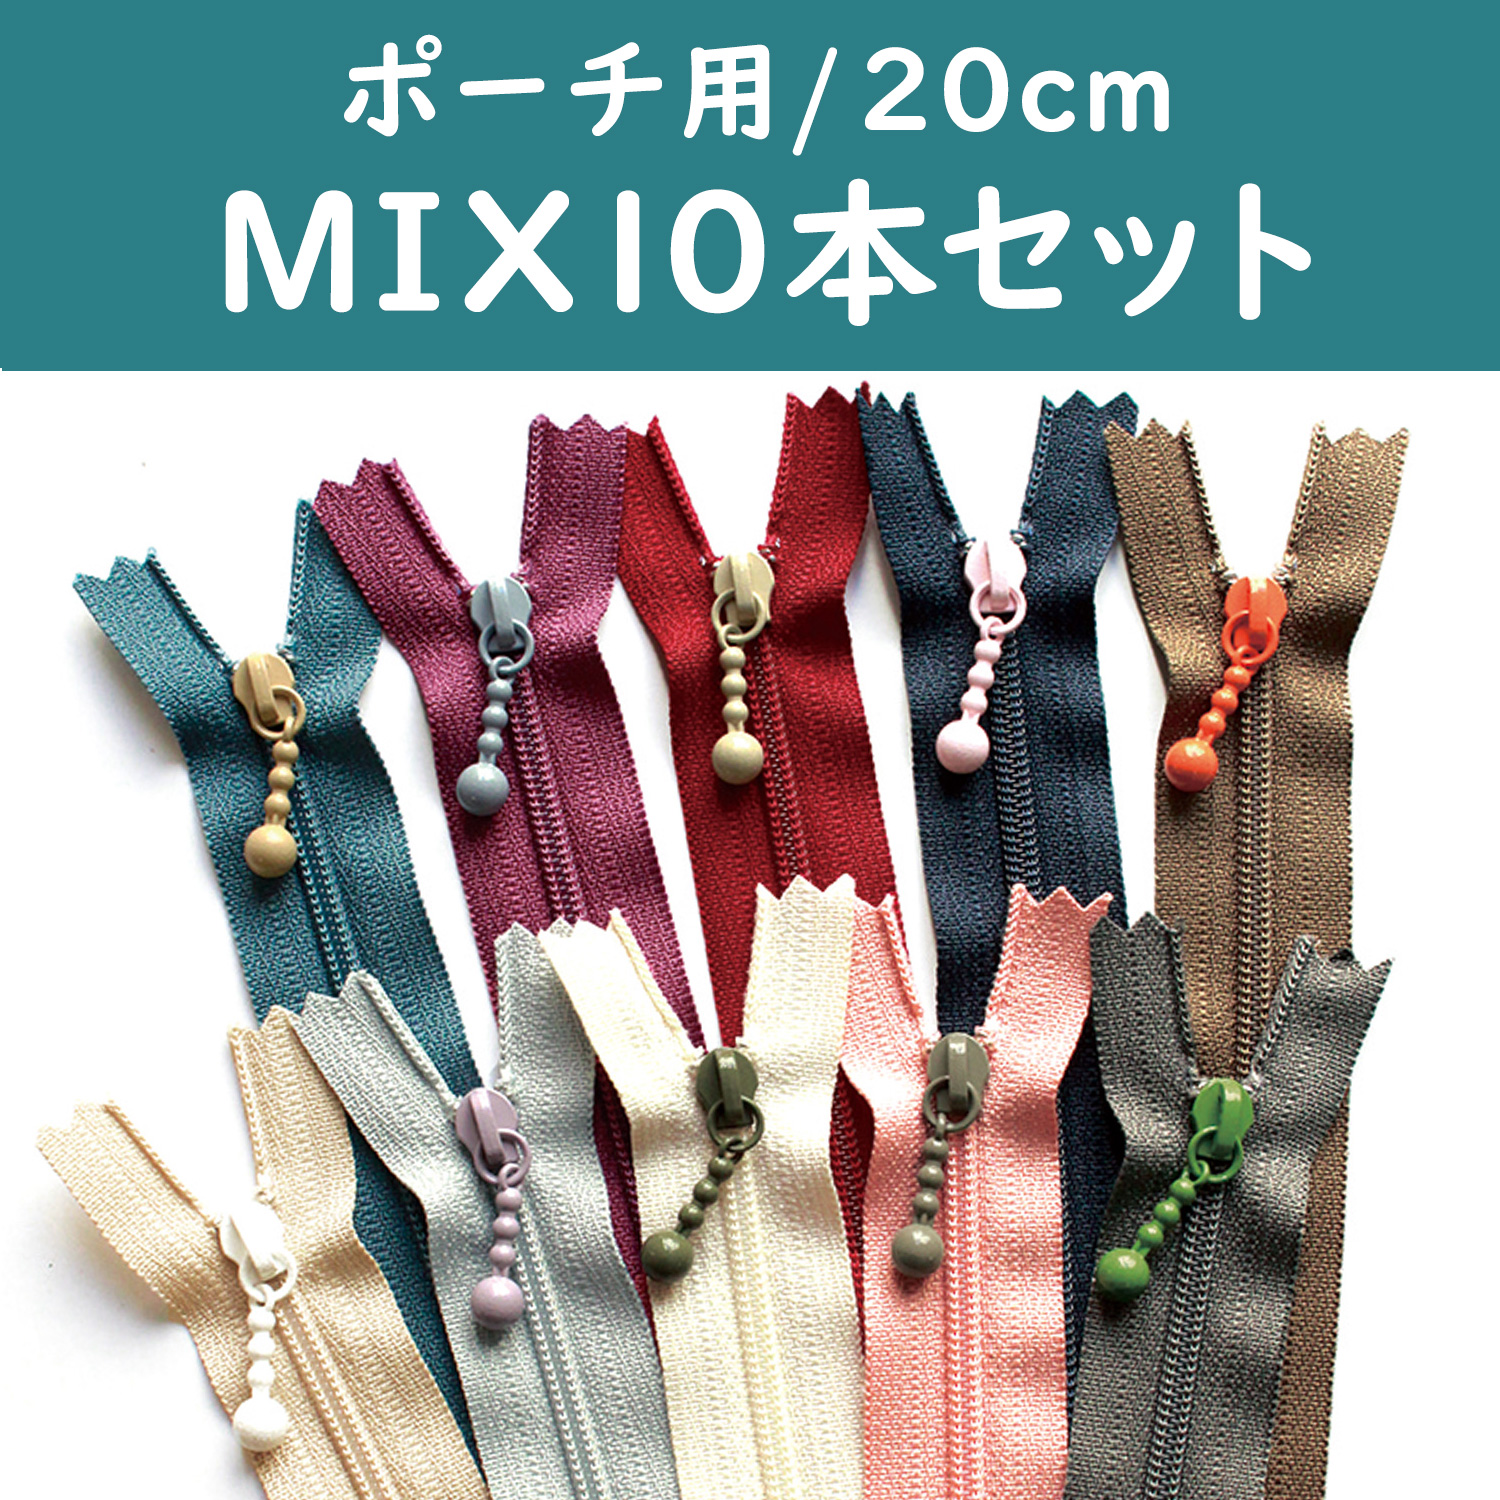 3CF20-COMIX-4 ポーチ用ファスナー モダンカラー 20cm 10色セット(袋)